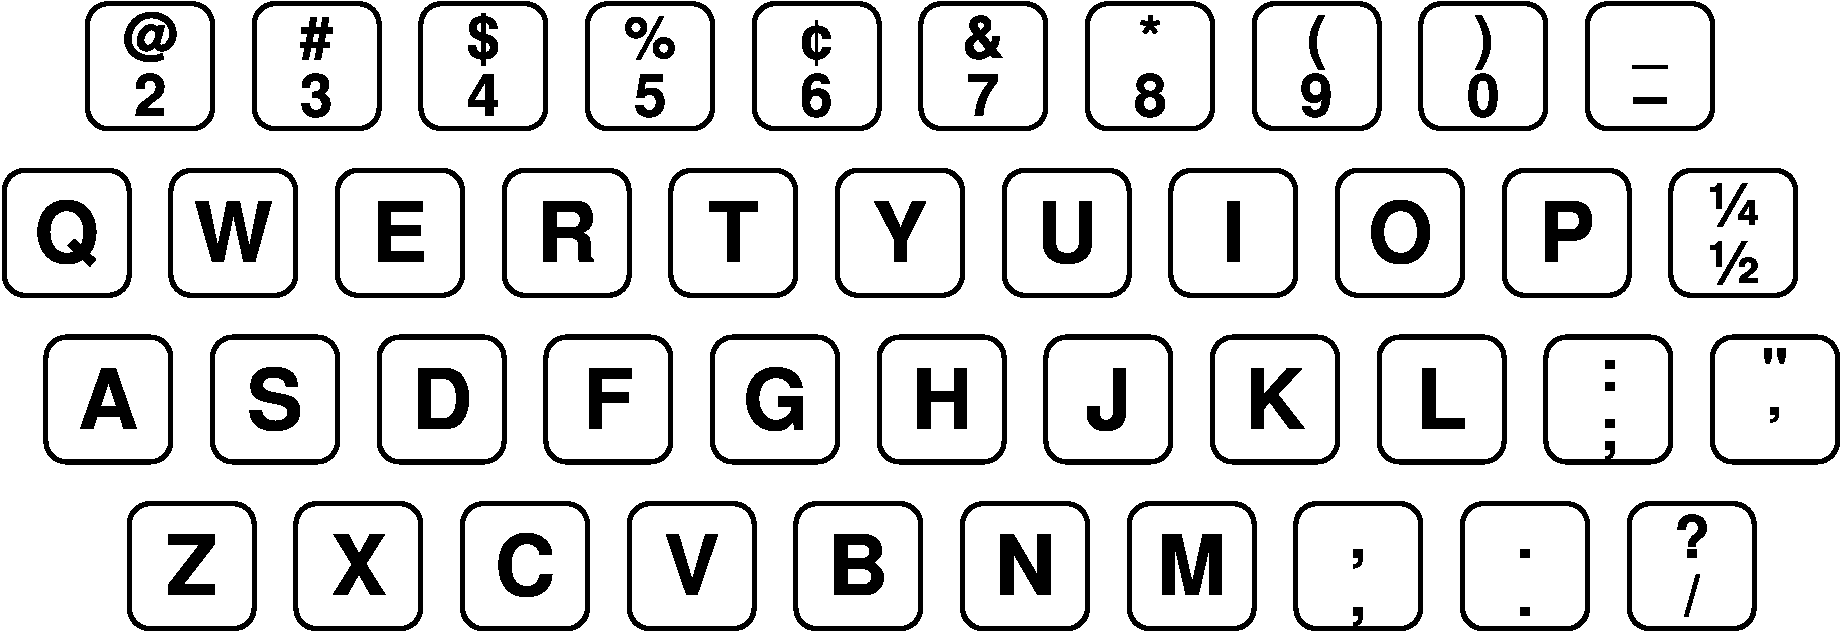 ASA X4.7「Electric Typewriter Keyboard」